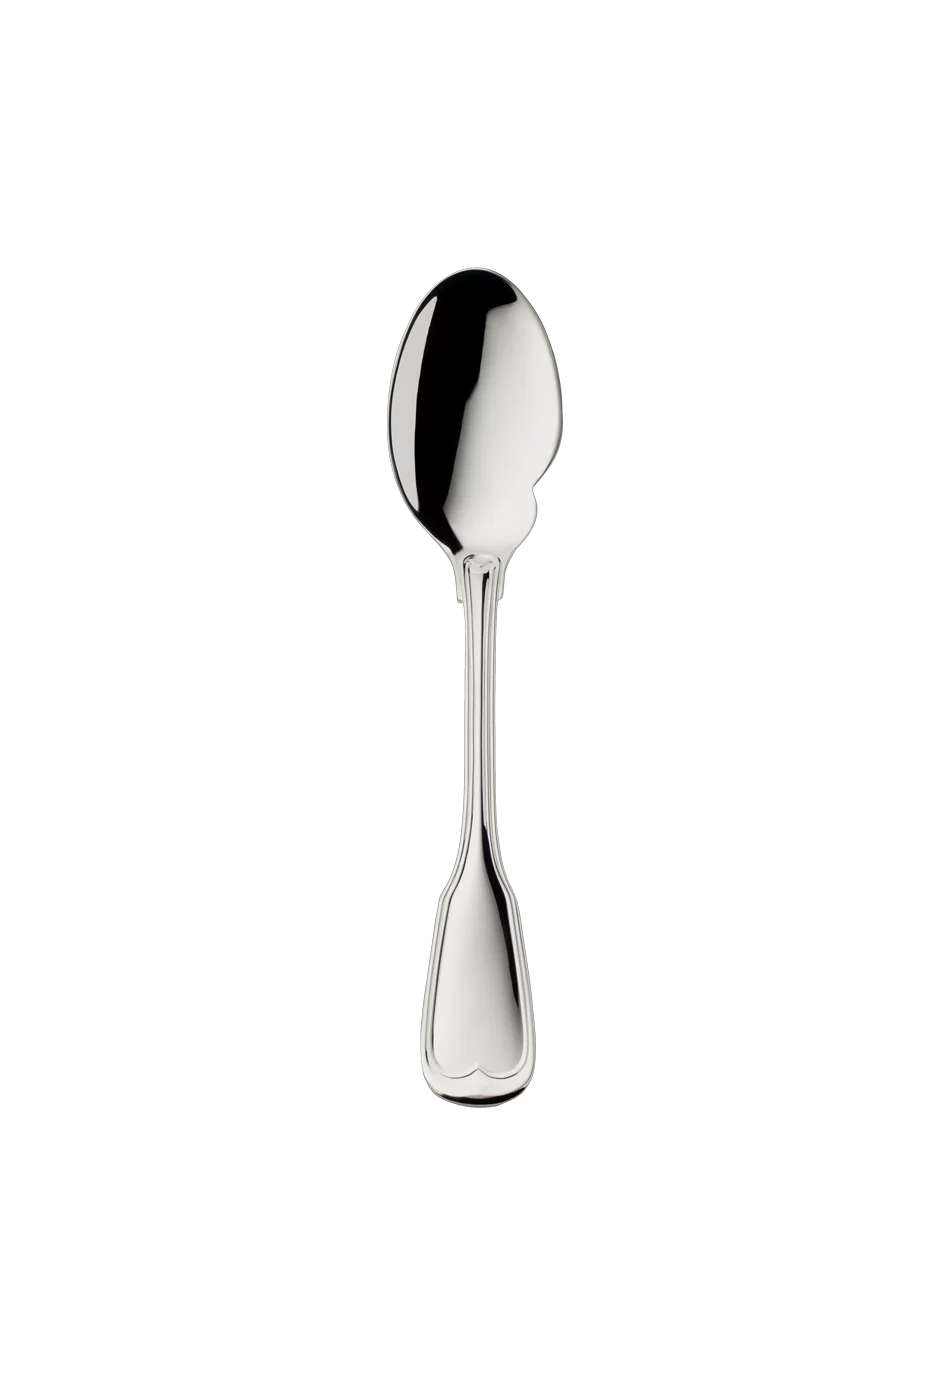 Alt-Faden Gourmet spoon (925 Sterling Silver)